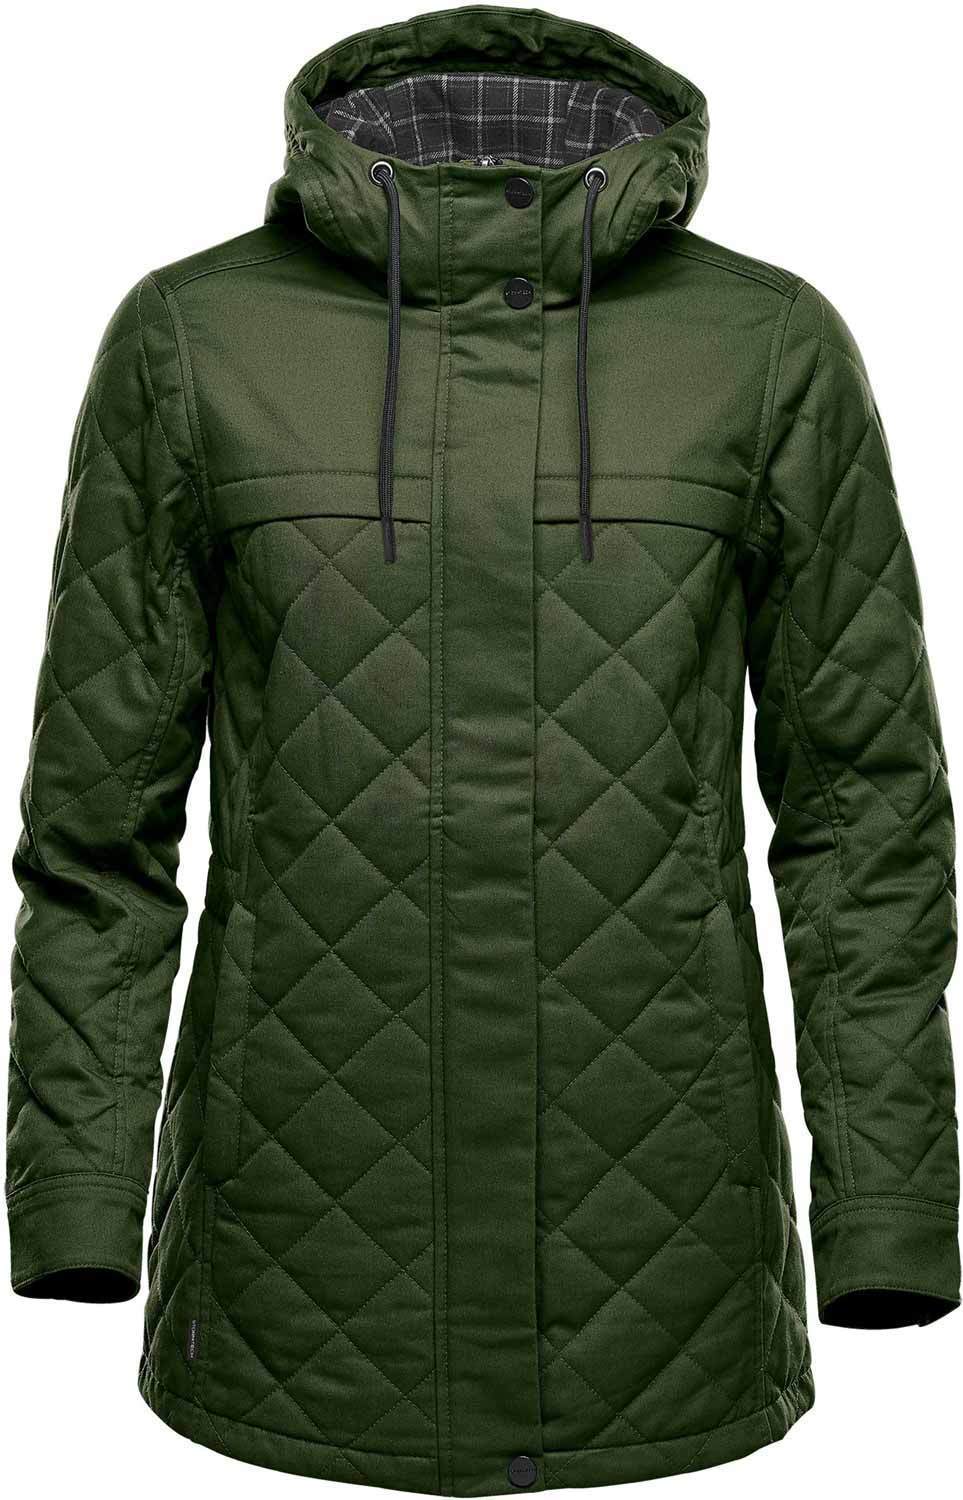 BXQ-1W Bushwick quilted jacket pour femme - Liquidation